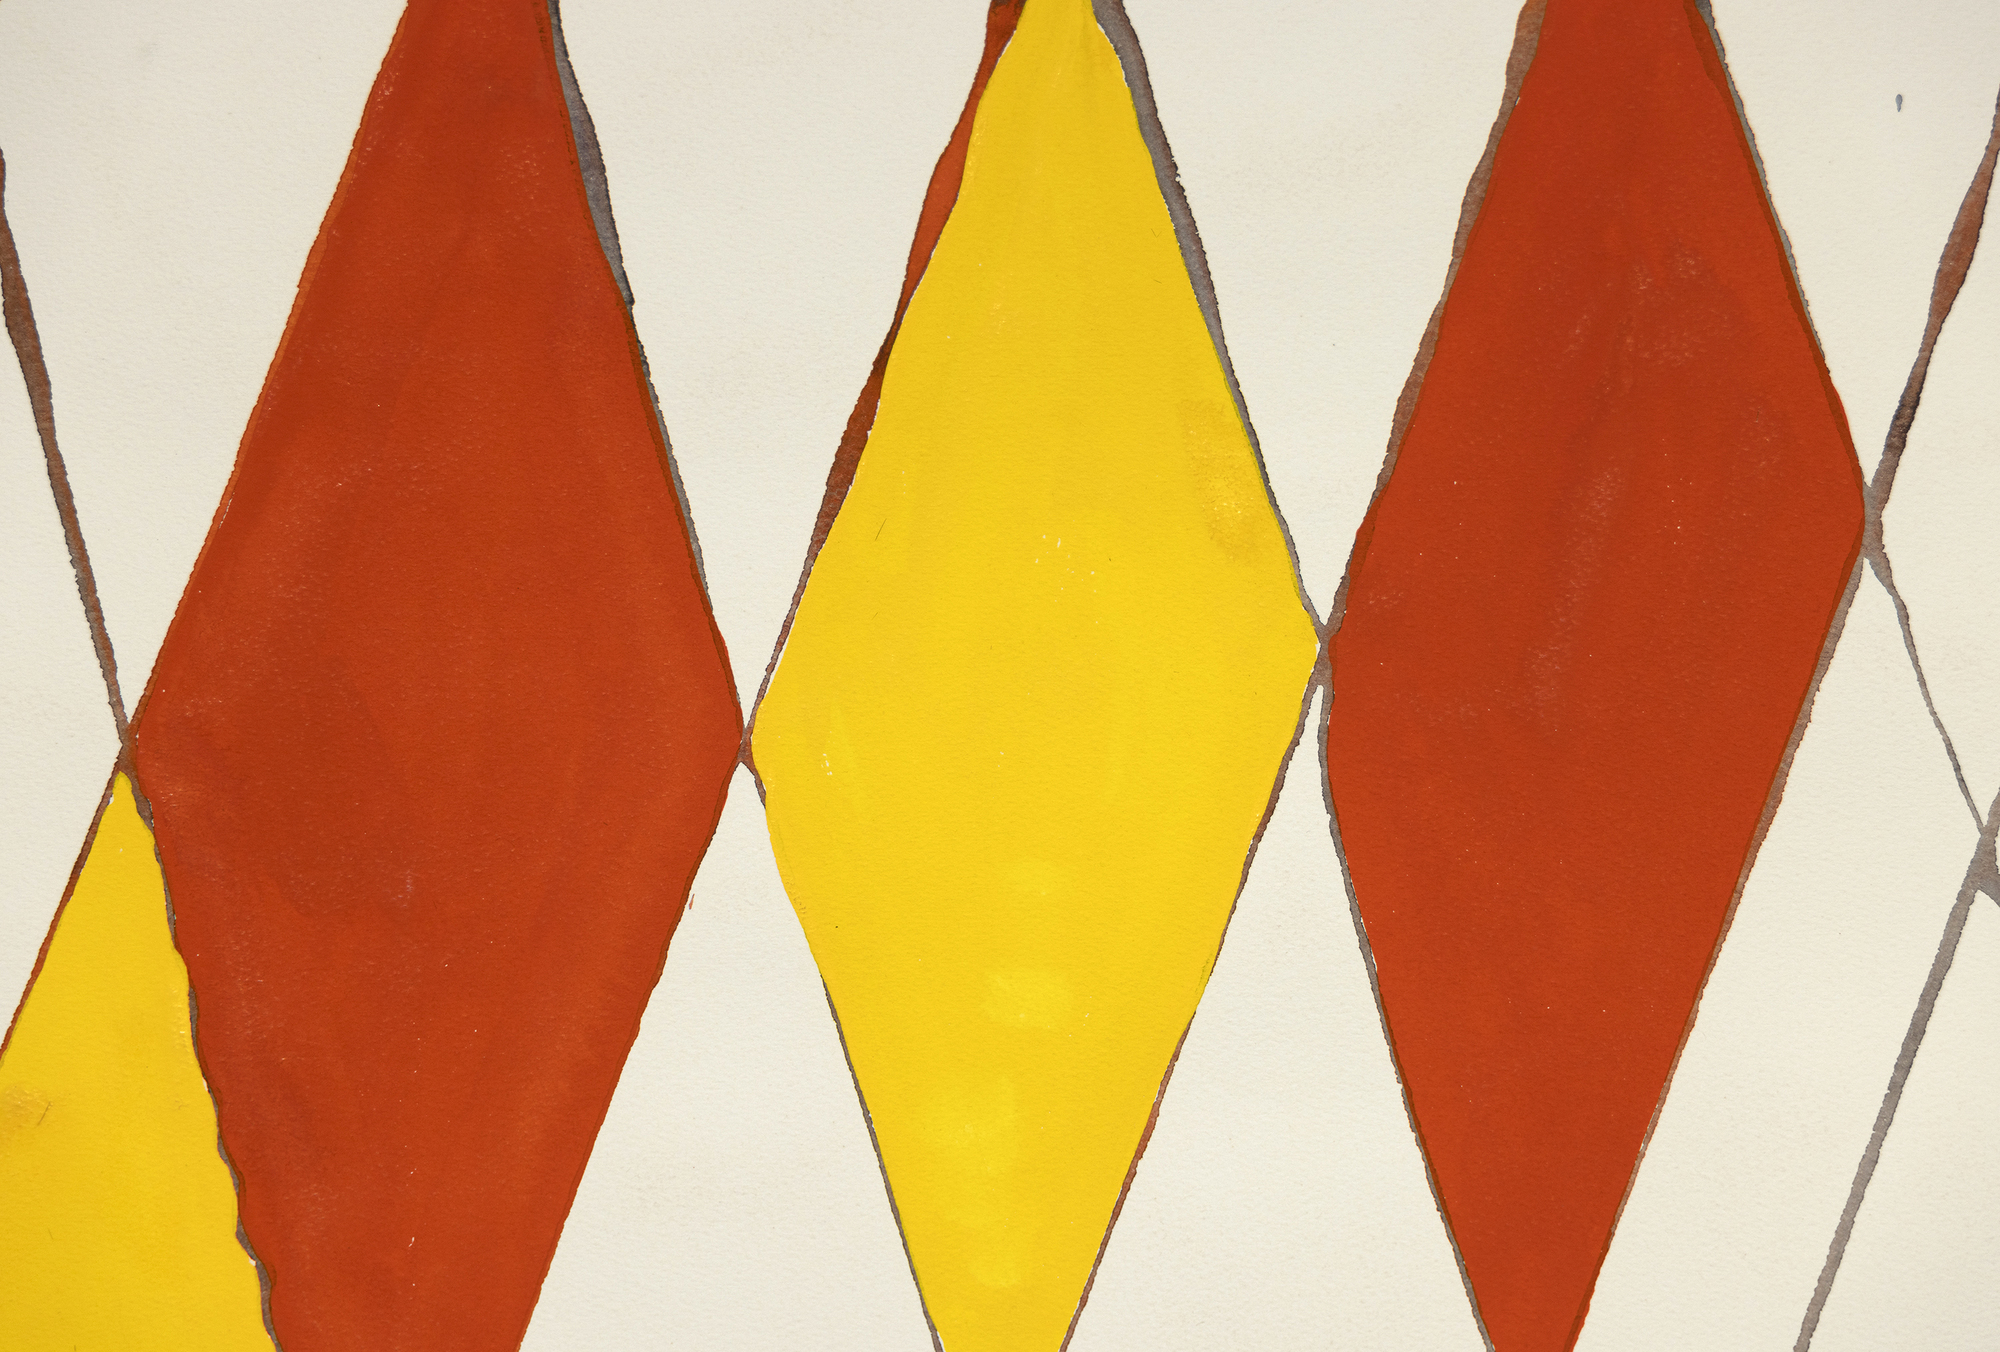 アレクサンダー・カルダーによる魅惑的なグワッシュ画 &quot;Wigwam rouge et jaune &quot;は、デザインと色彩の鮮やかな探求である。頂点付近で交差する対角線の格子によって支配された構図は、ダイナミックなバランスを醸し出している。カルダーは赤と黄色の菱形で気まぐれな要素を取り入れ、作品に遊び心を吹き込み、祝祭的な雰囲気を作り出している。右寄りの線の頂点にある赤い球は気まぐれな印象を呼び起こし、左寄りの線の上にある小さな灰色の球はコントラストと均衡を与えている。カルダーはシンプルさと重要なデザイン要素を見事に融合させ、「ウィグワム・ルージュ・エ・ジョーヌ」を視覚的に楽しませている。